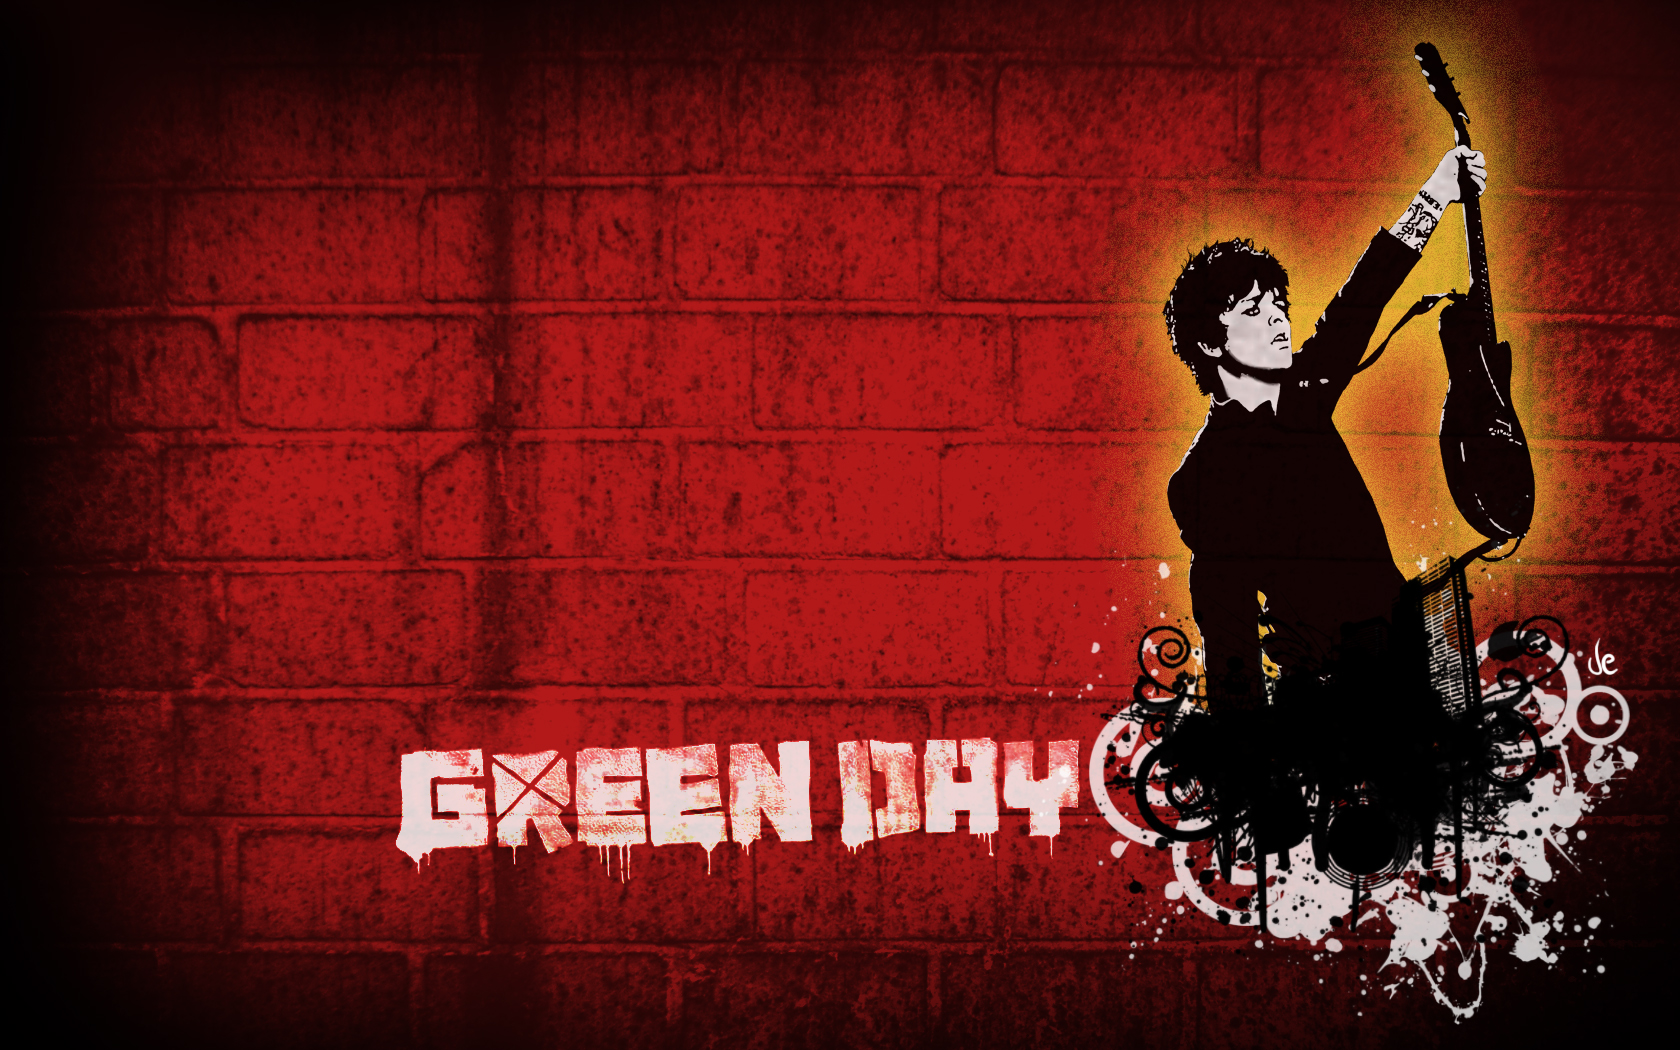 Green Day Wallpaper Full HD Wallpaperlepi